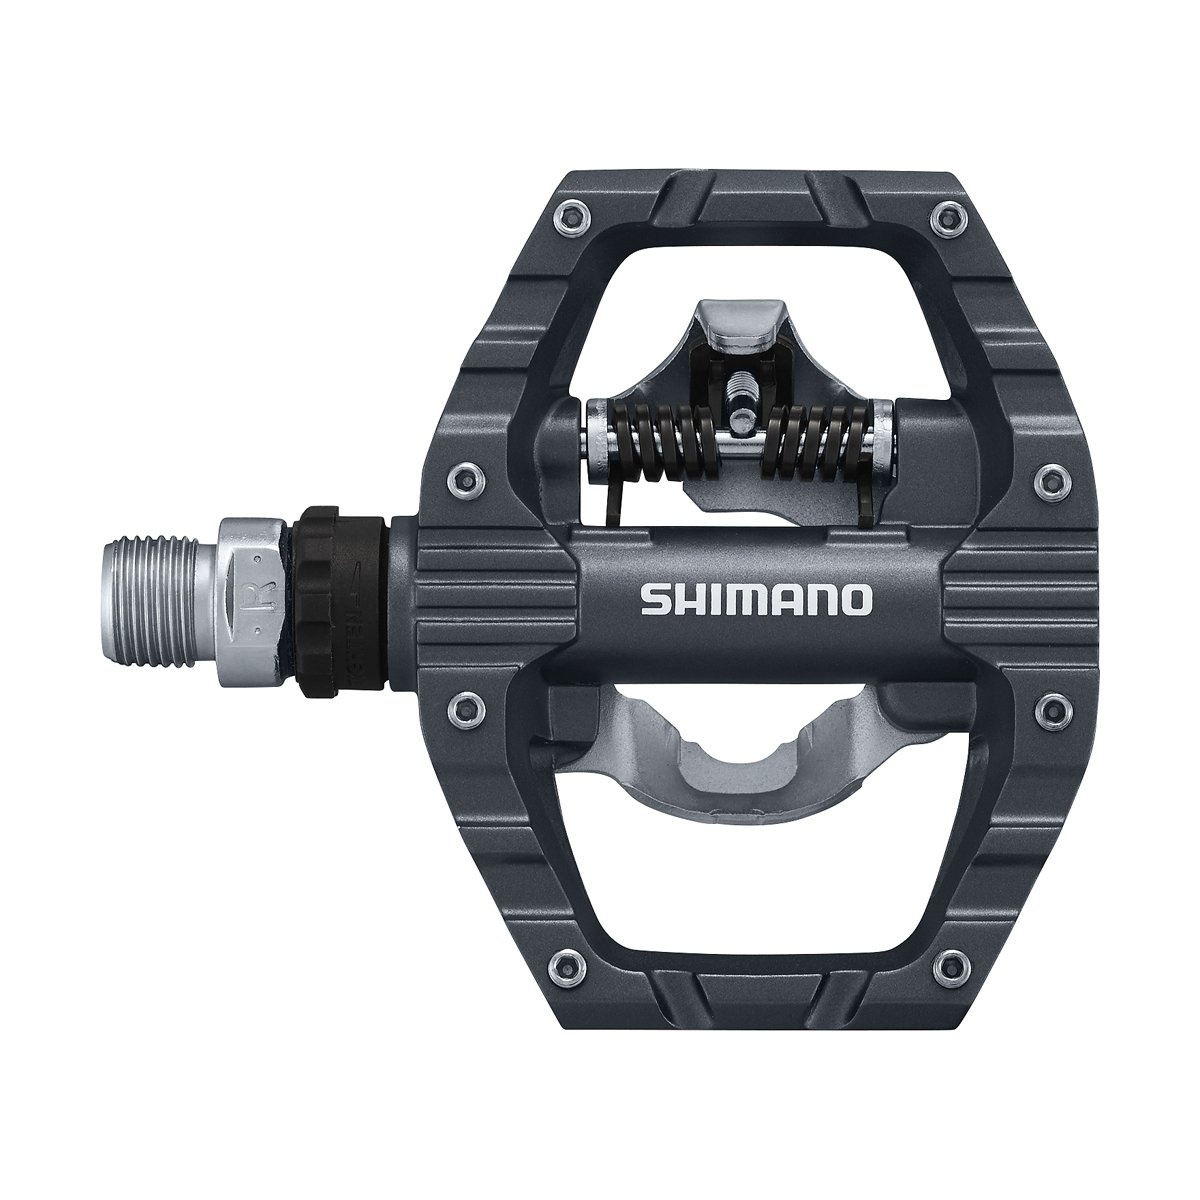 Tilbehør - Pedaler & Klamper - Shimano PD-EH500 kombi pedal inkl. klampe